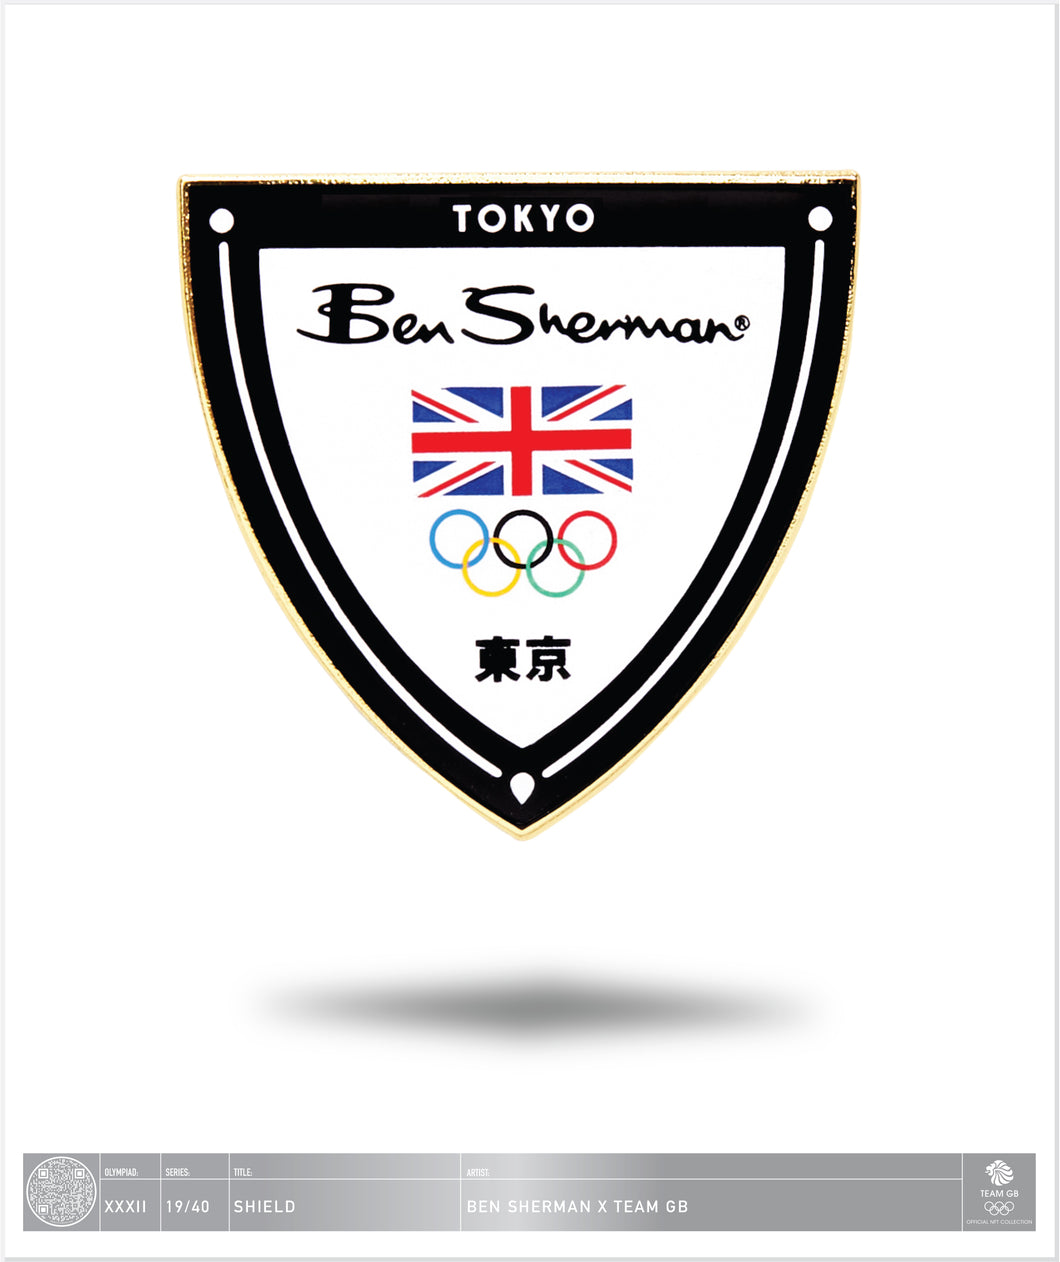 Ben Sherman Tokyo - Shield - 19 / 40